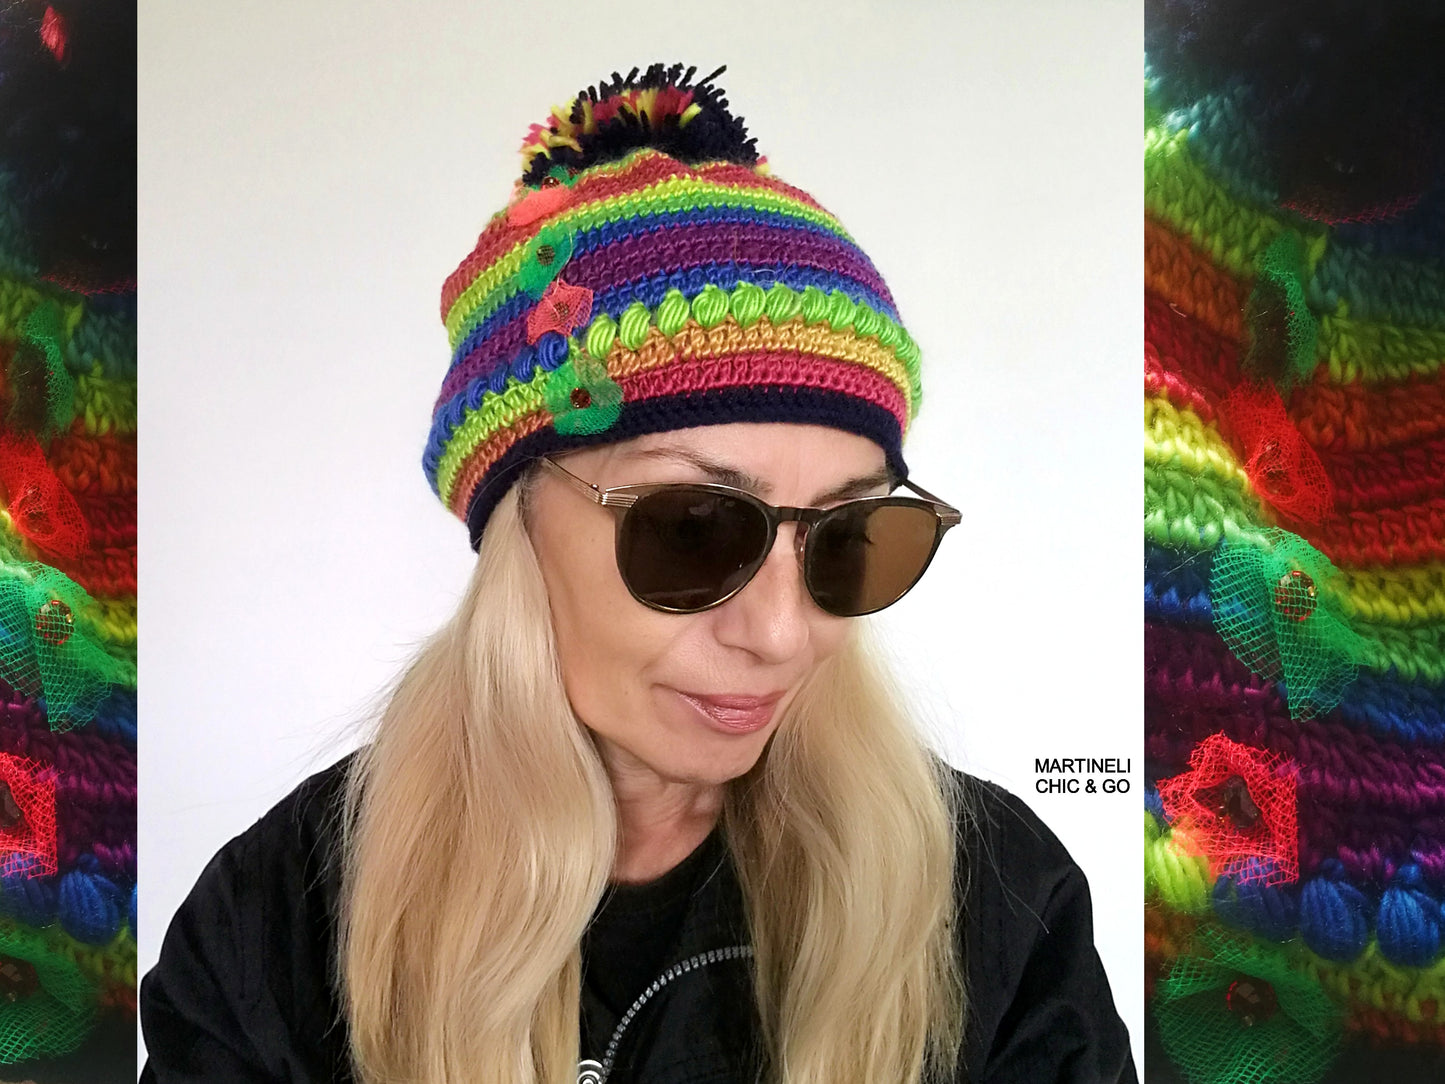 Pom Pom Knit Wool Beanie for Women Handmade Colourful Warm Hat